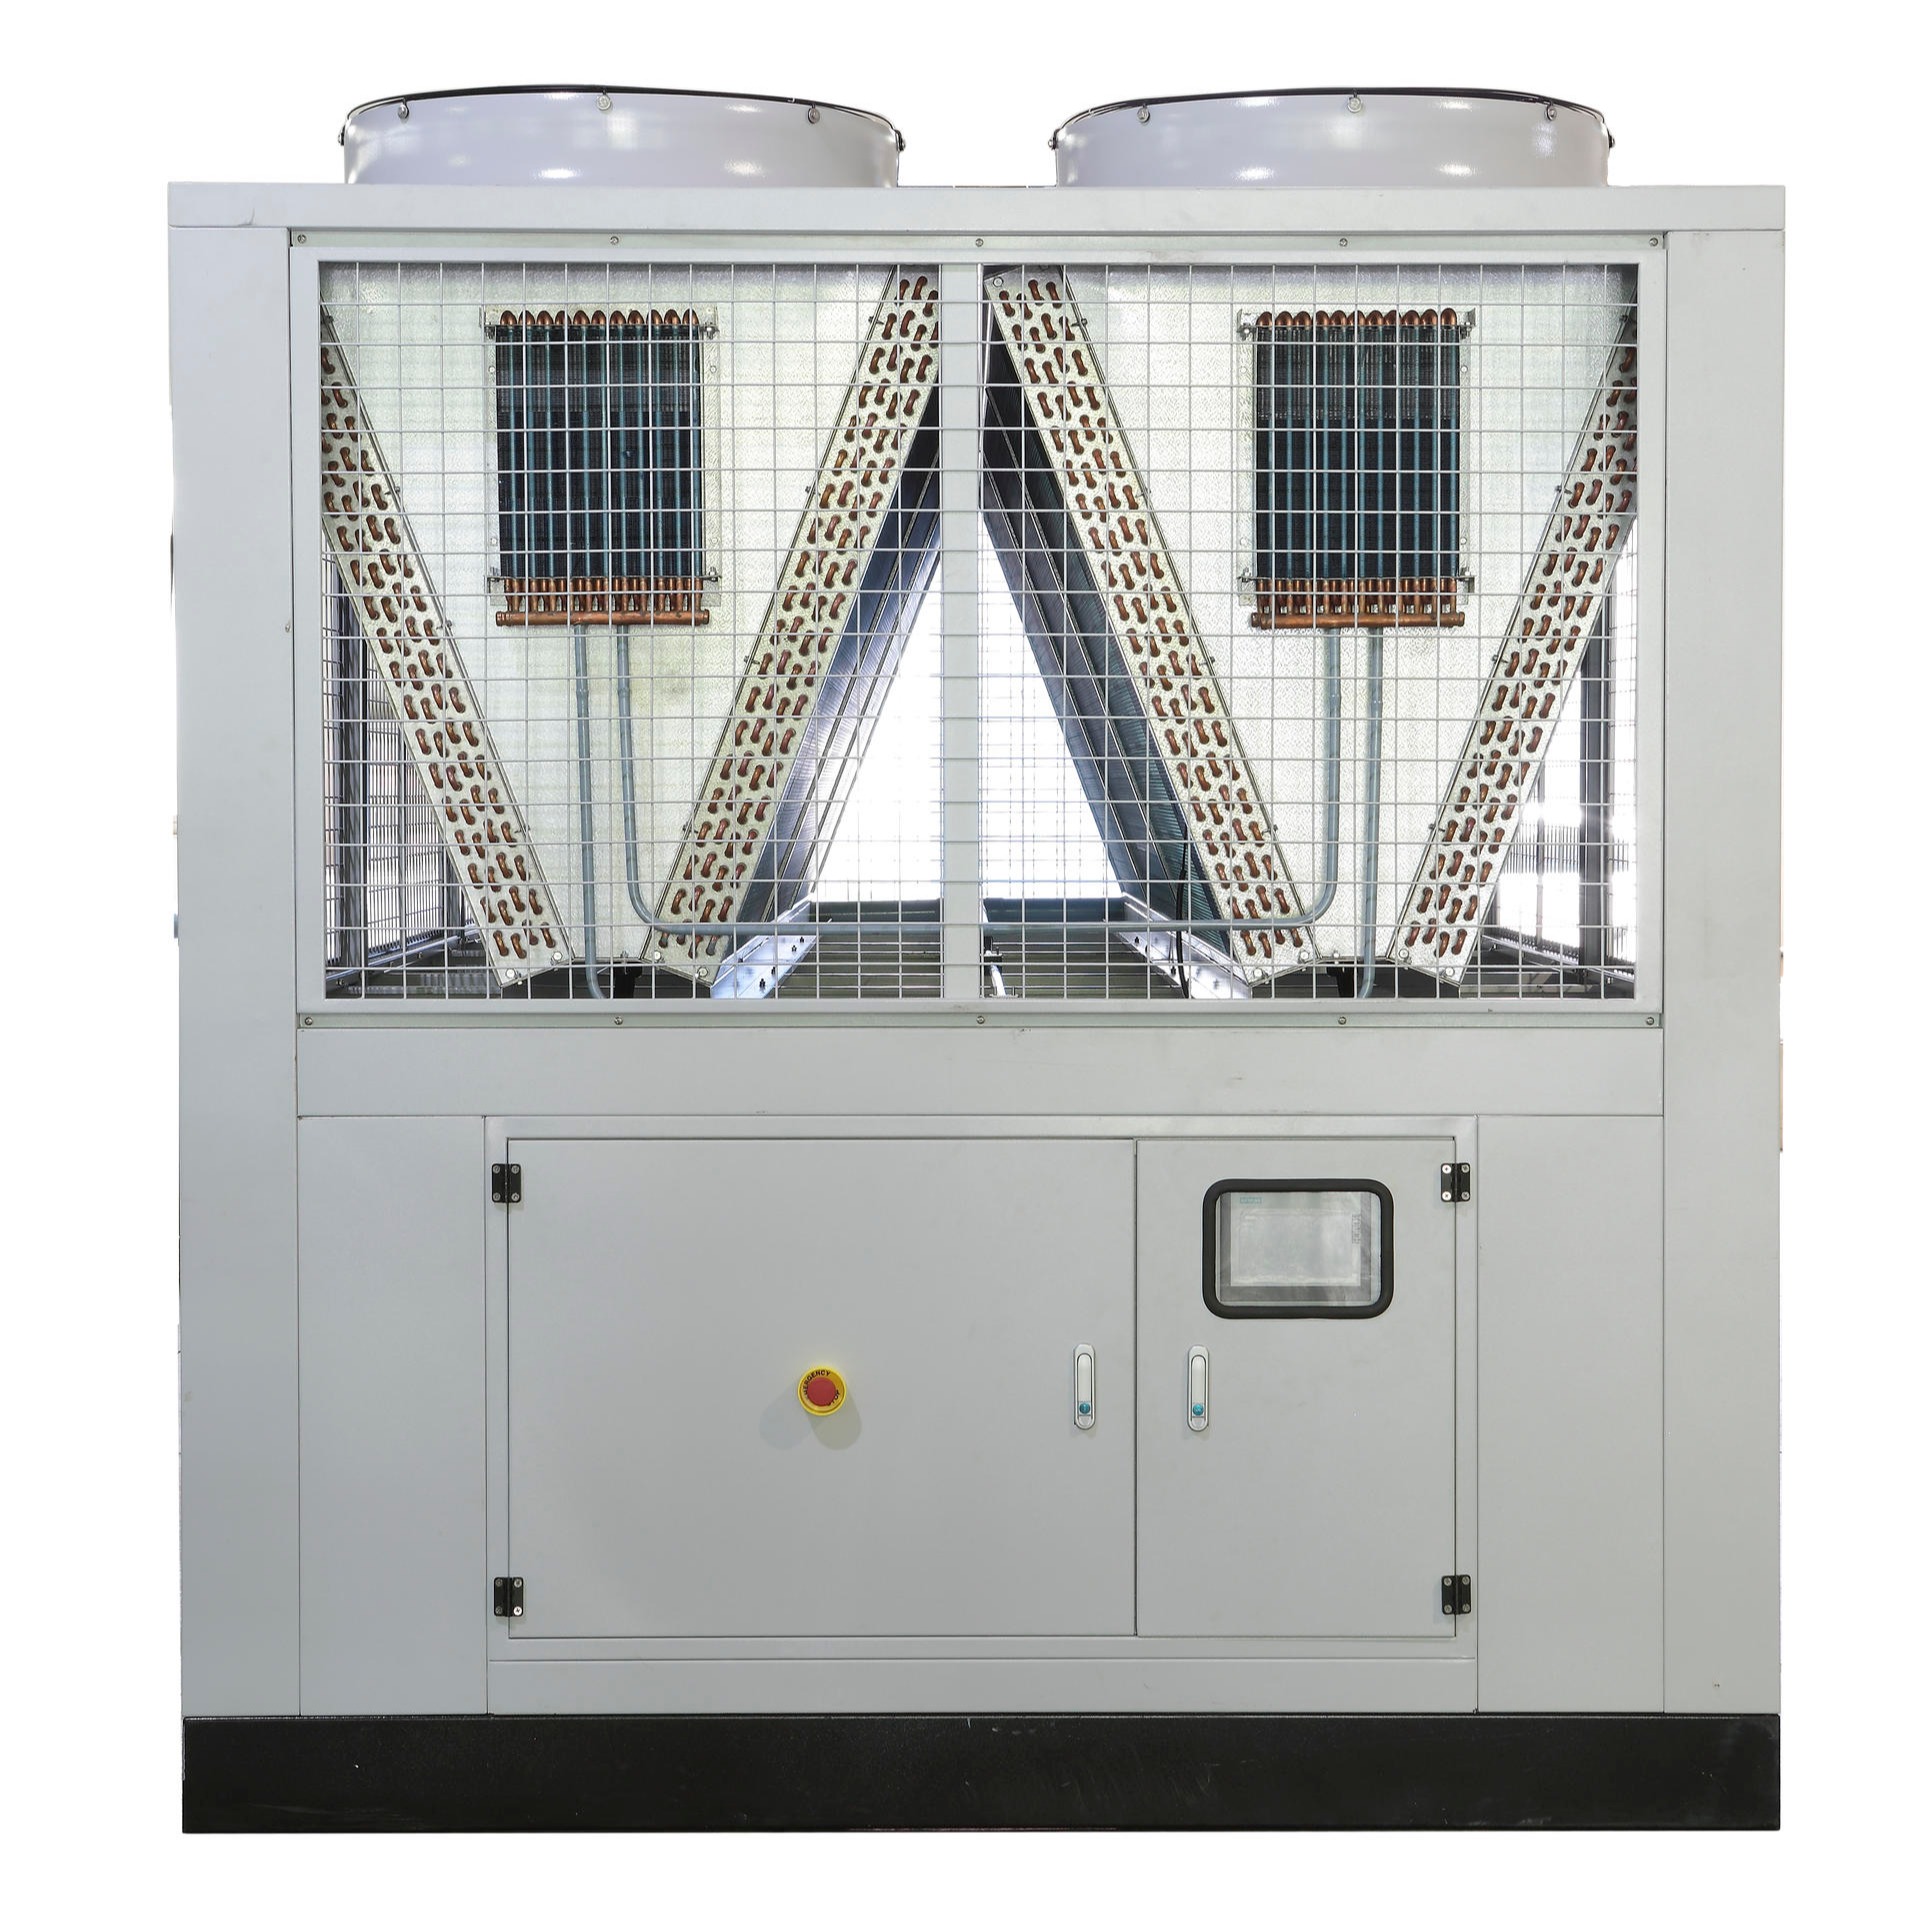 拉萨二氧化碳热泵机组  拉萨空气源热泵生产厂家 海安鑫机械HAX-80CY  拉萨CO2空气源热泵  拉萨烘干热泵机组图片